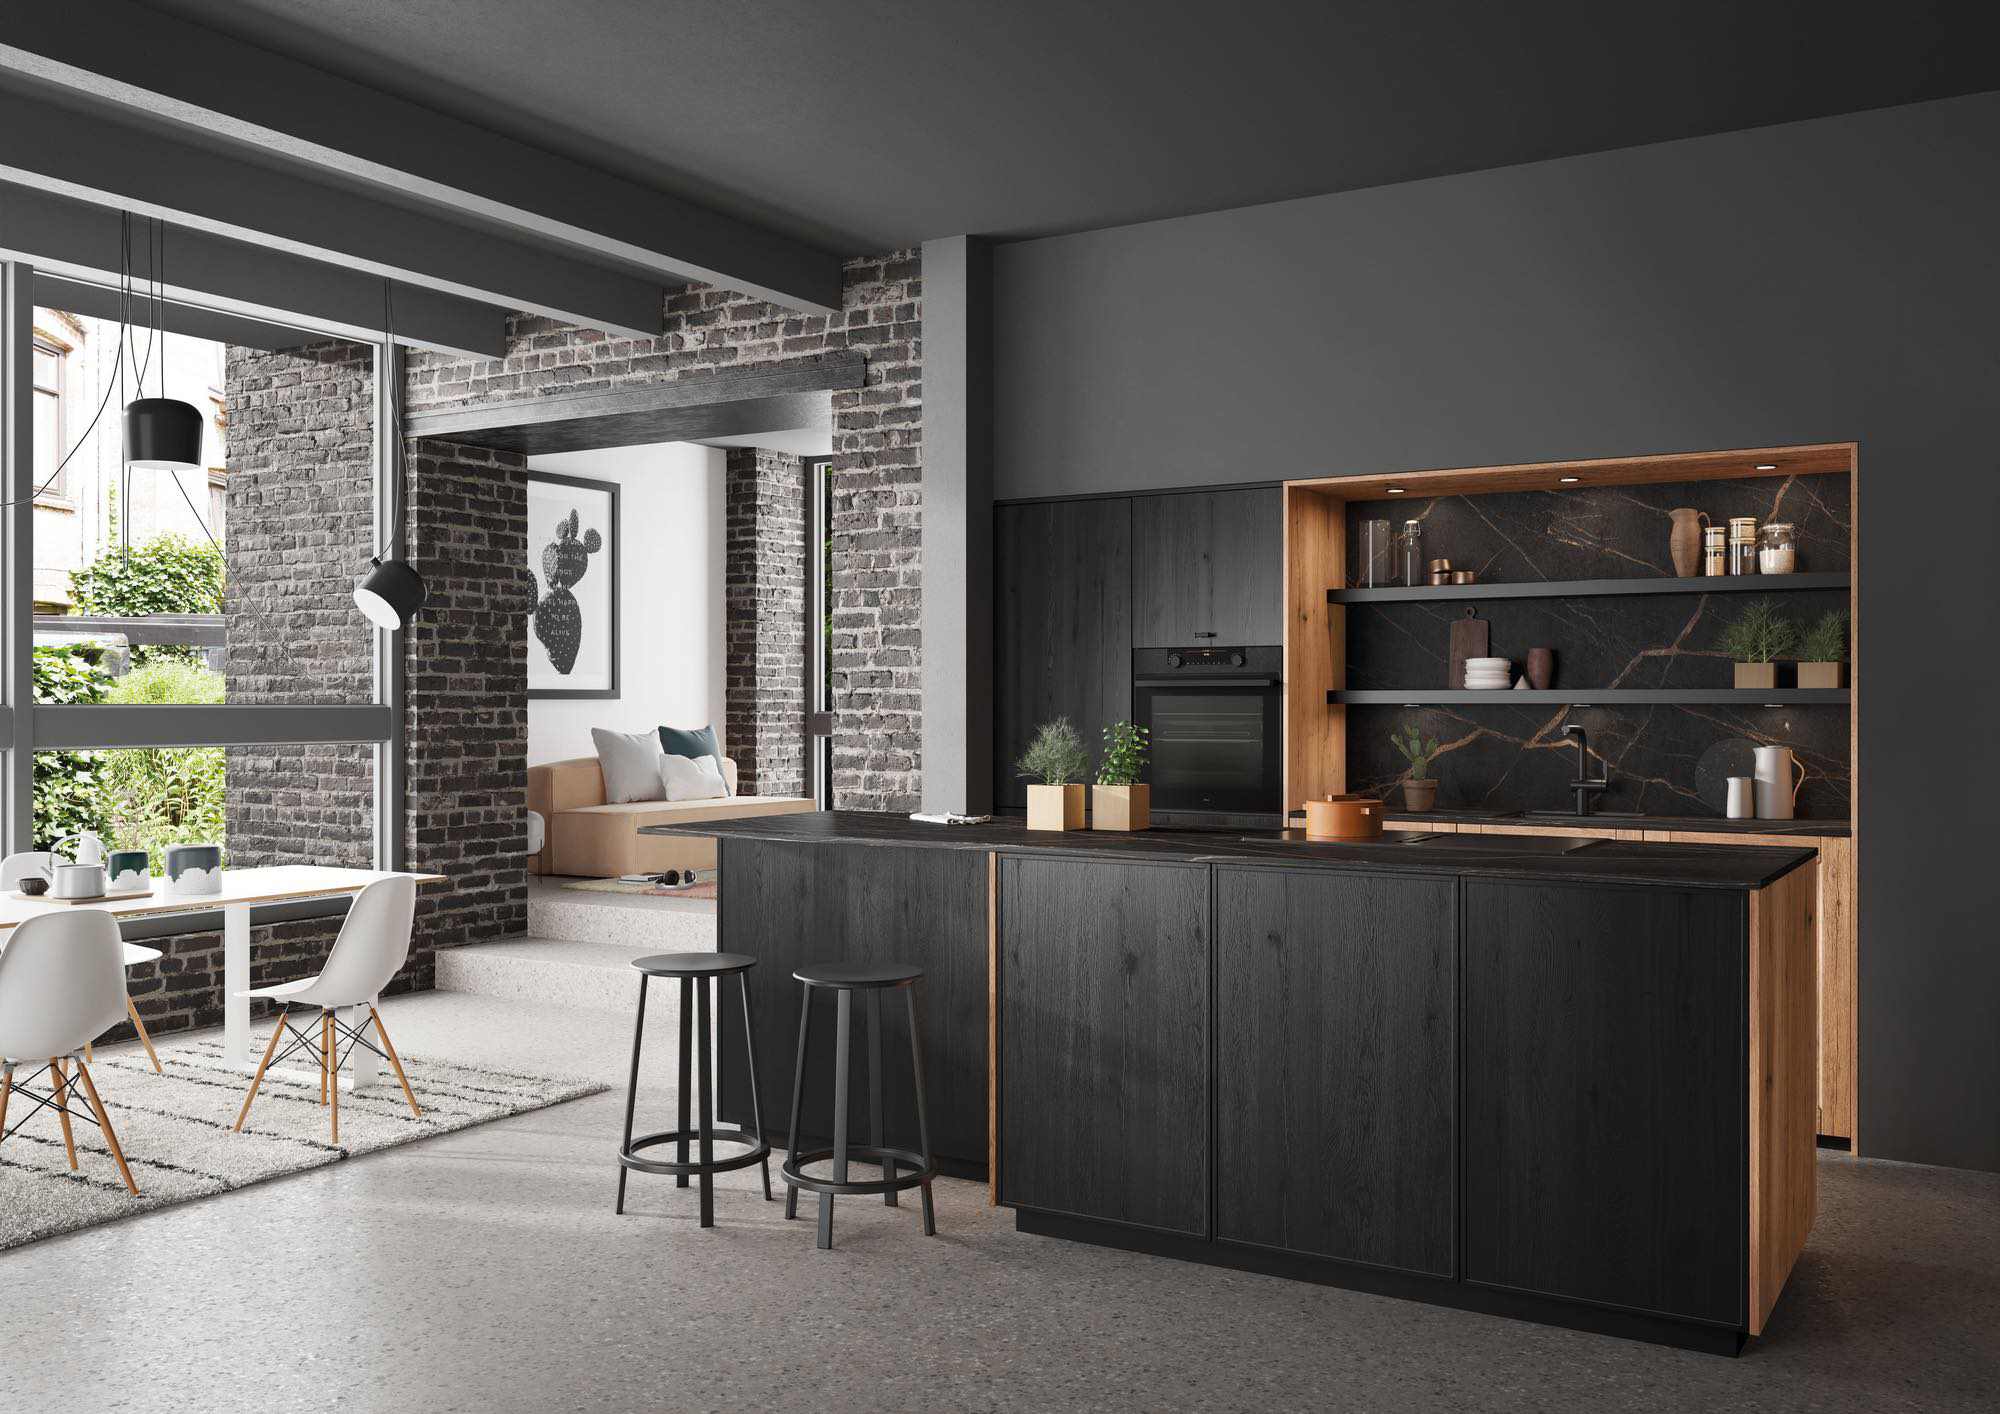 Rotpunkt Dark Wood Kitchen With Island 1 | John Willox Kitchen Design, Ellon